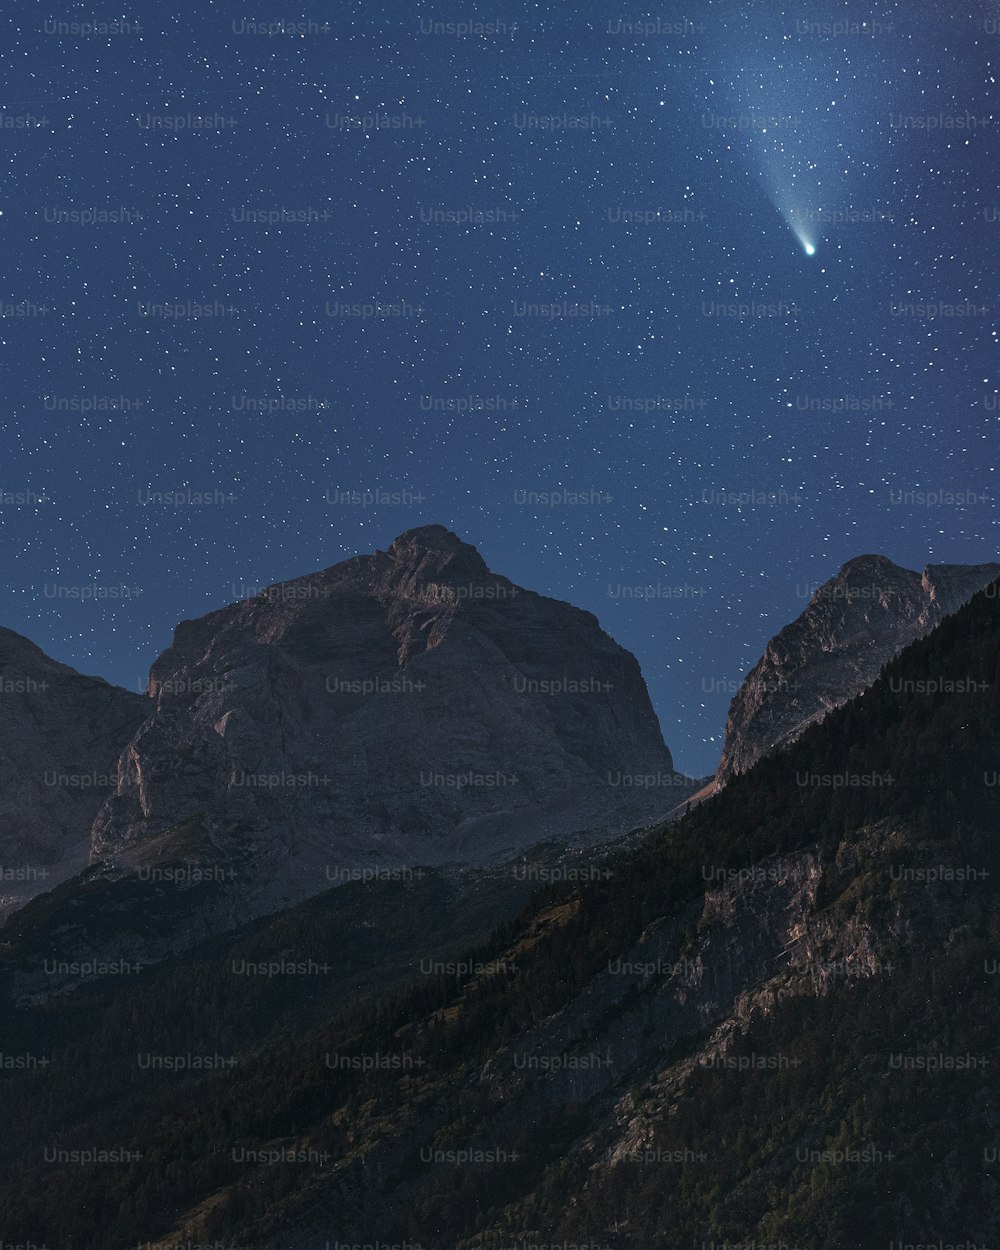 Blick auf einen Berg mit einem hellen Stern am Himmel